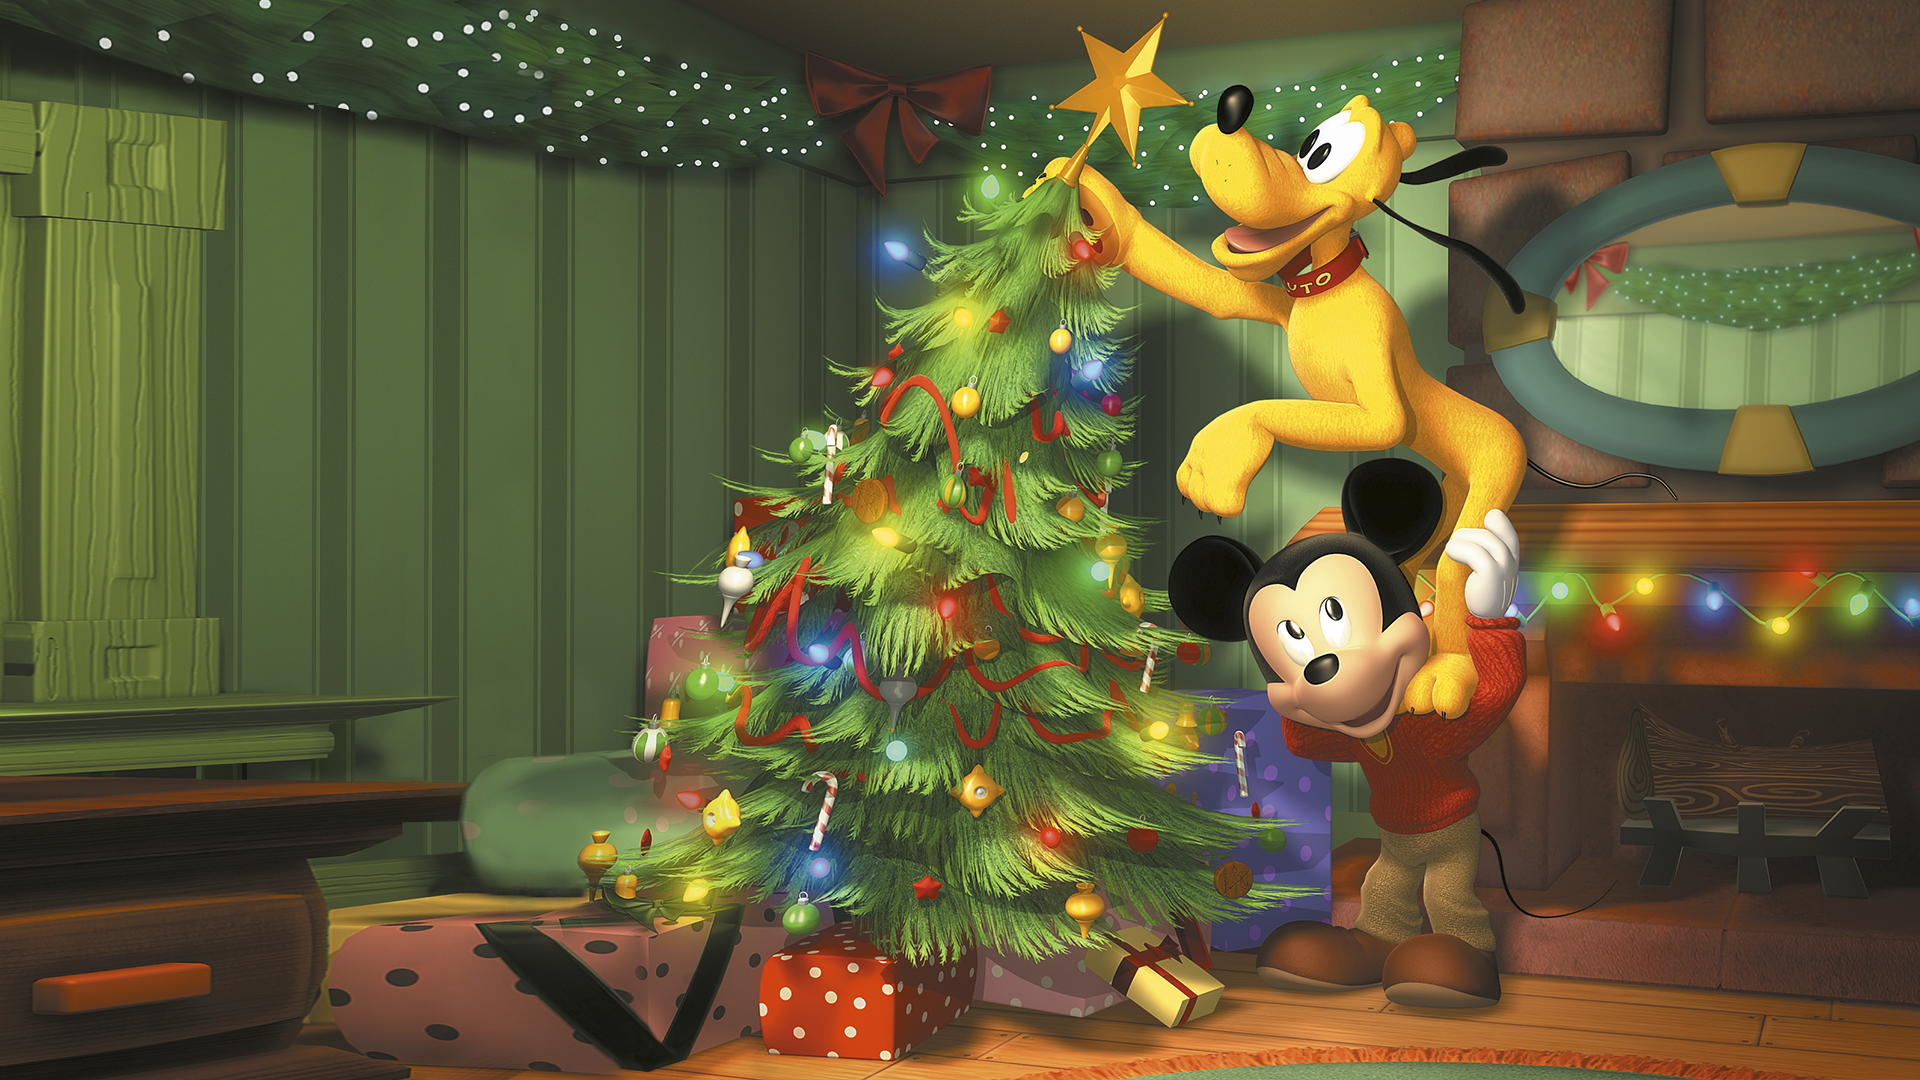 Mickey's Mooiste Kerst